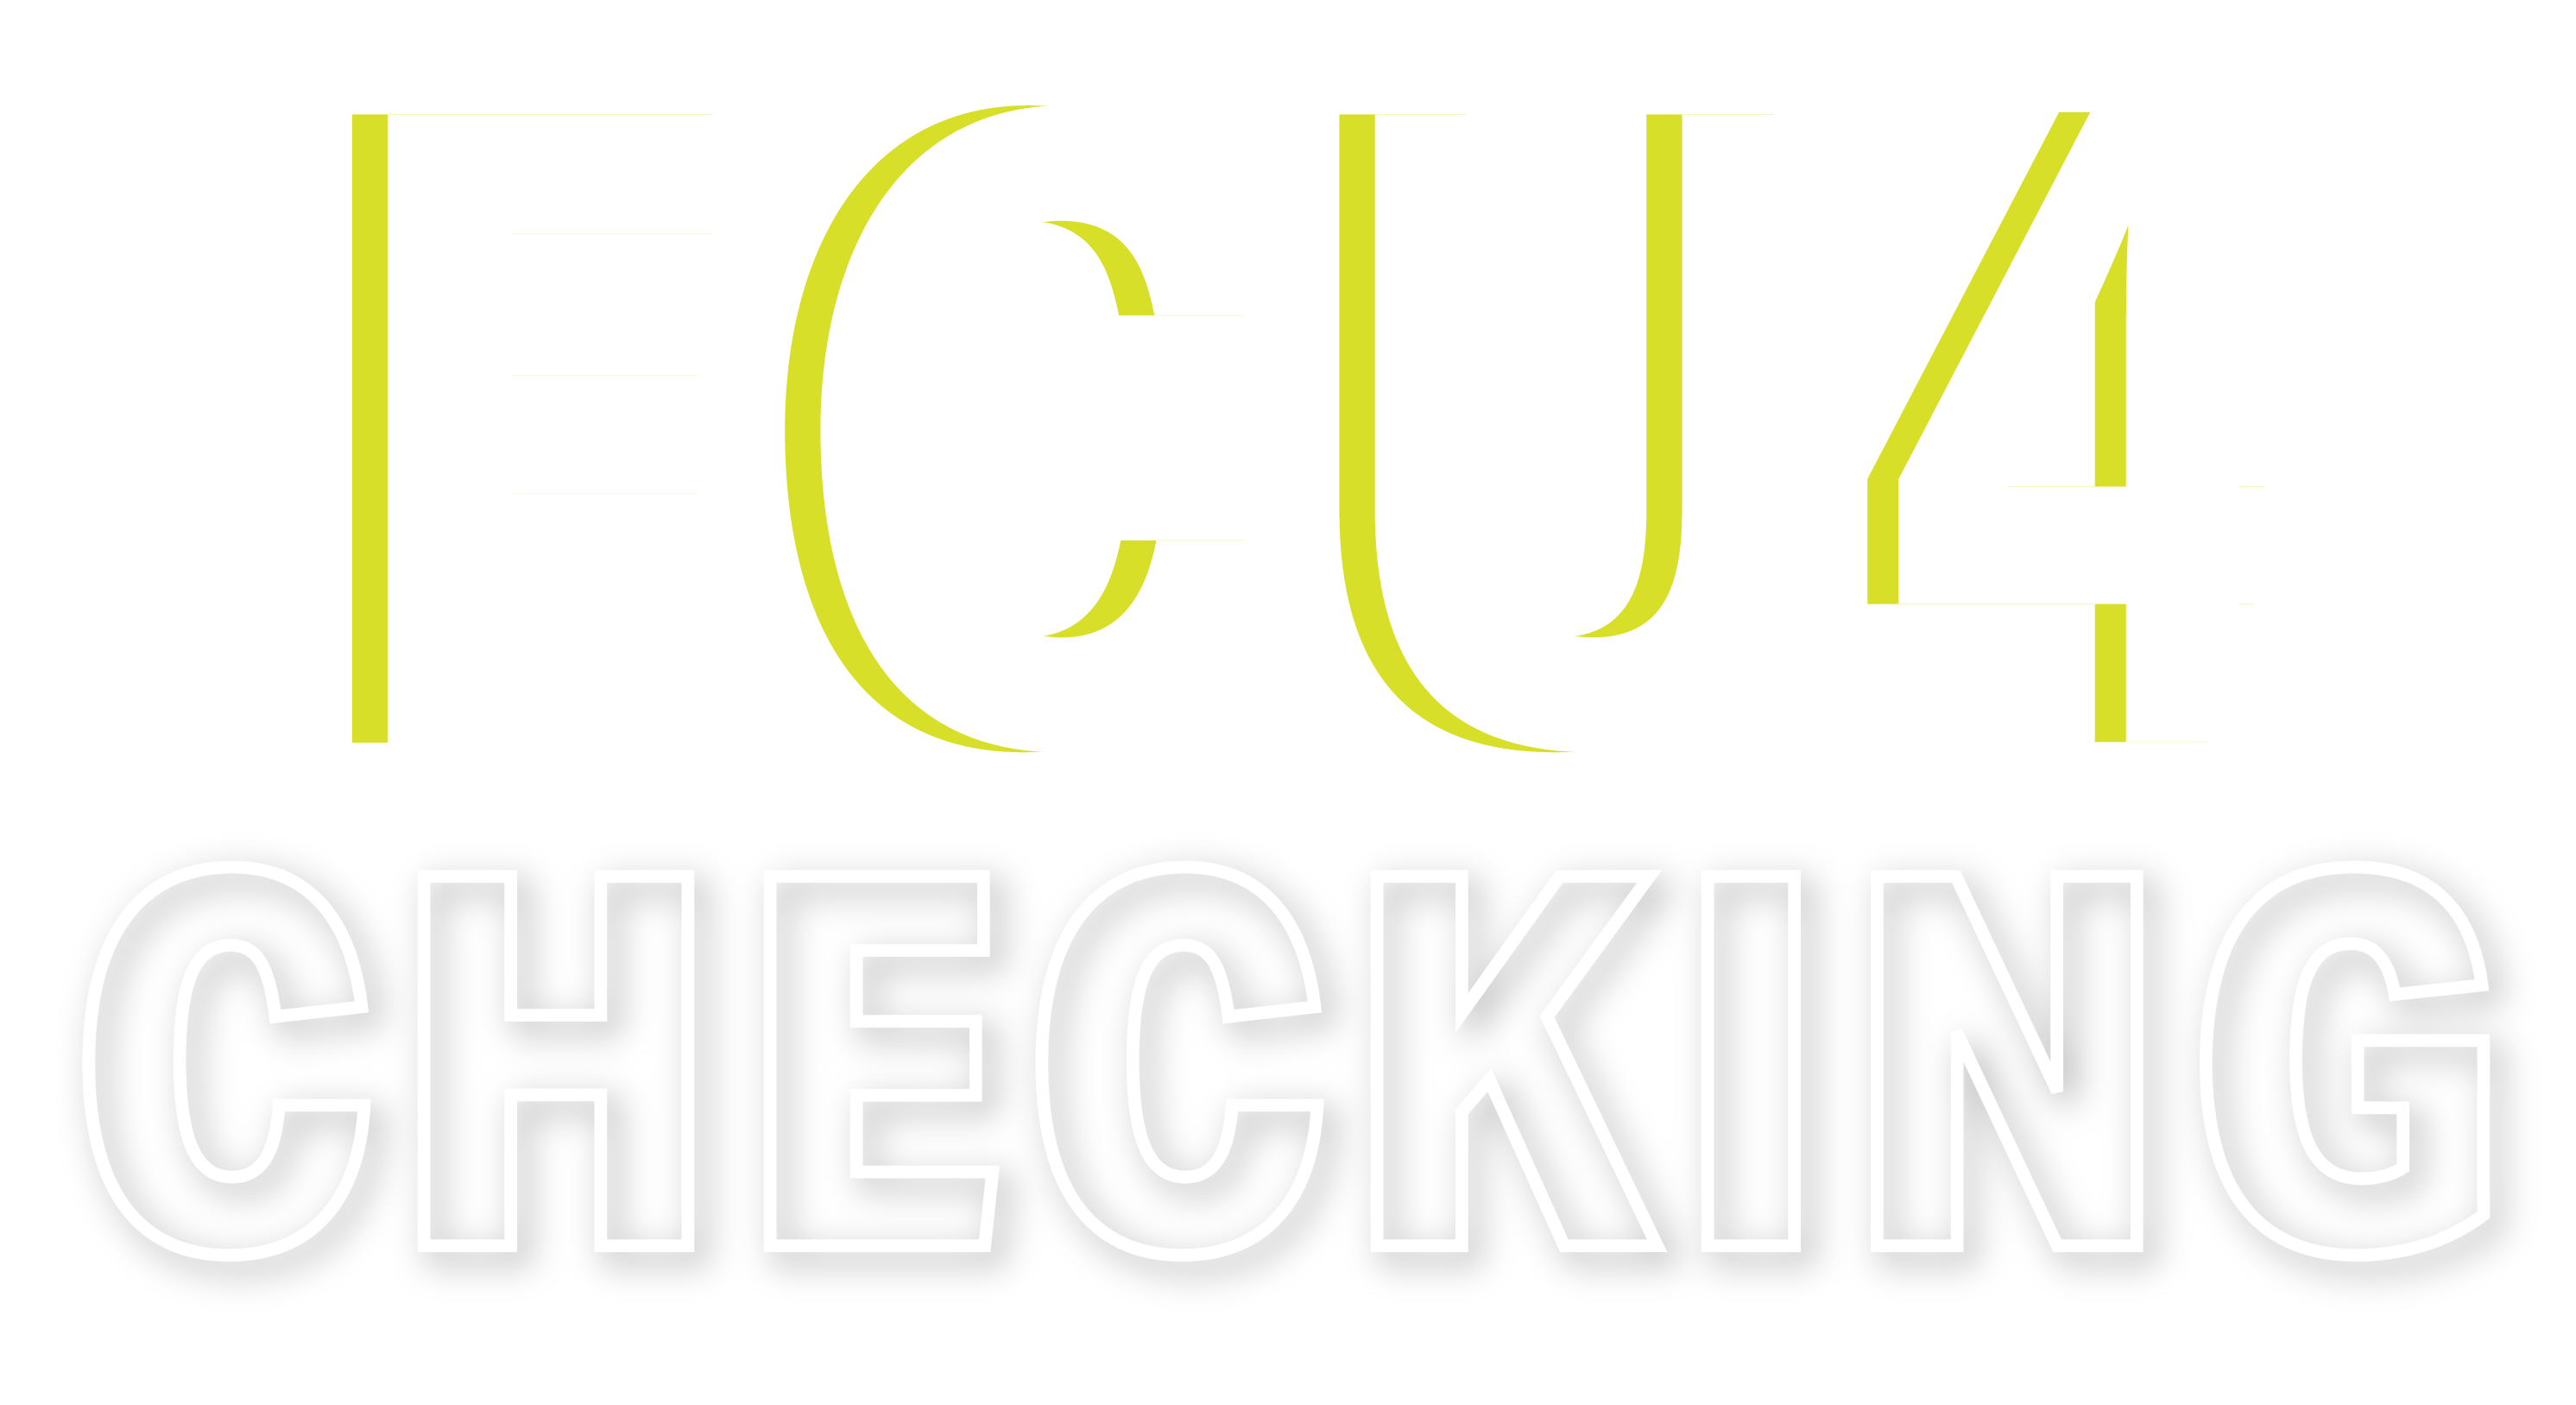 FCU4U Checking